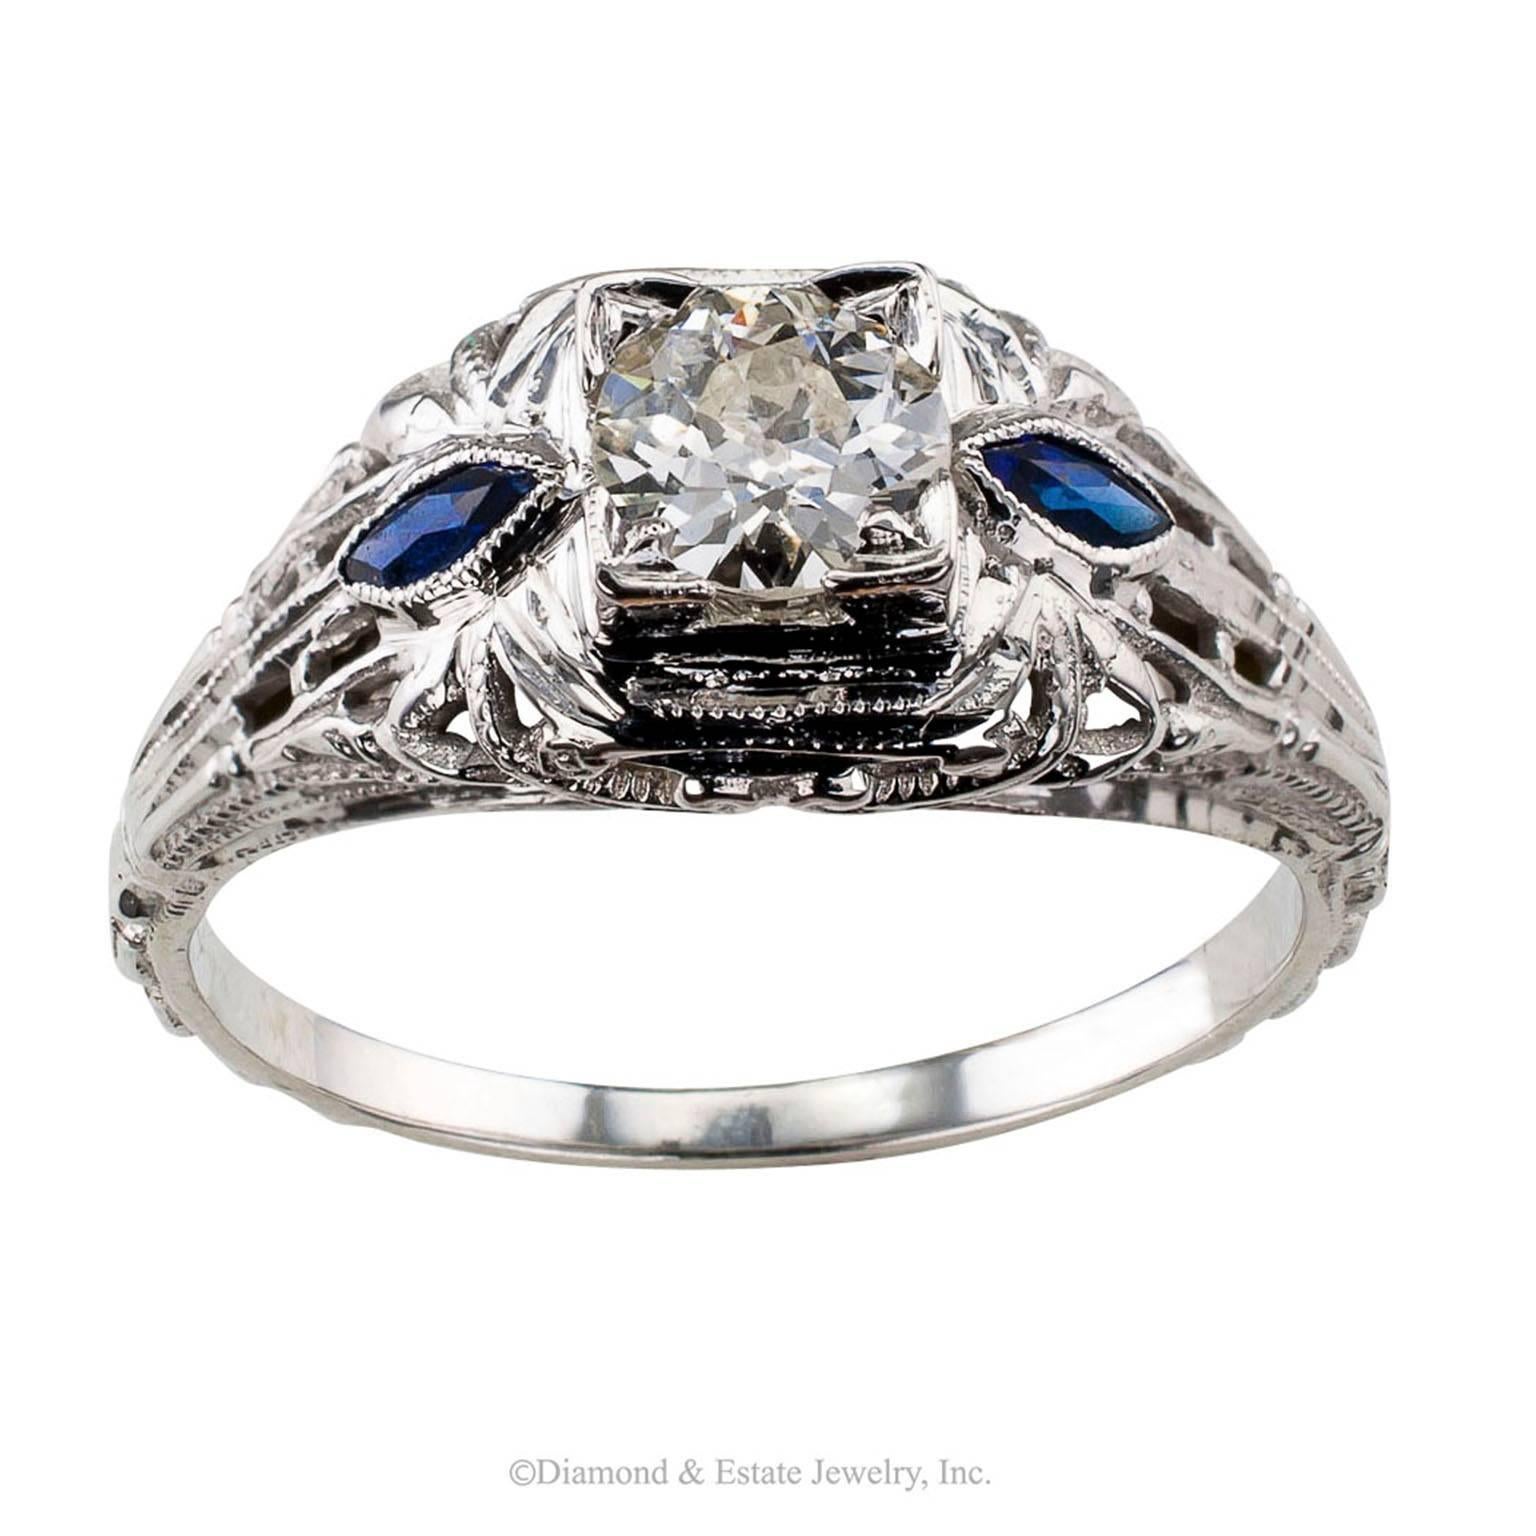 1930s Art Deco Old European-cut 0.42 Carat Diamond Engagement Ring

Art Deco 1930s old European-cut 0.42 carat diamond engagement ring mounted in 18-karat white gold circa 1930.  Showcasing an old European-cut diamond weighing 0.42 carat,